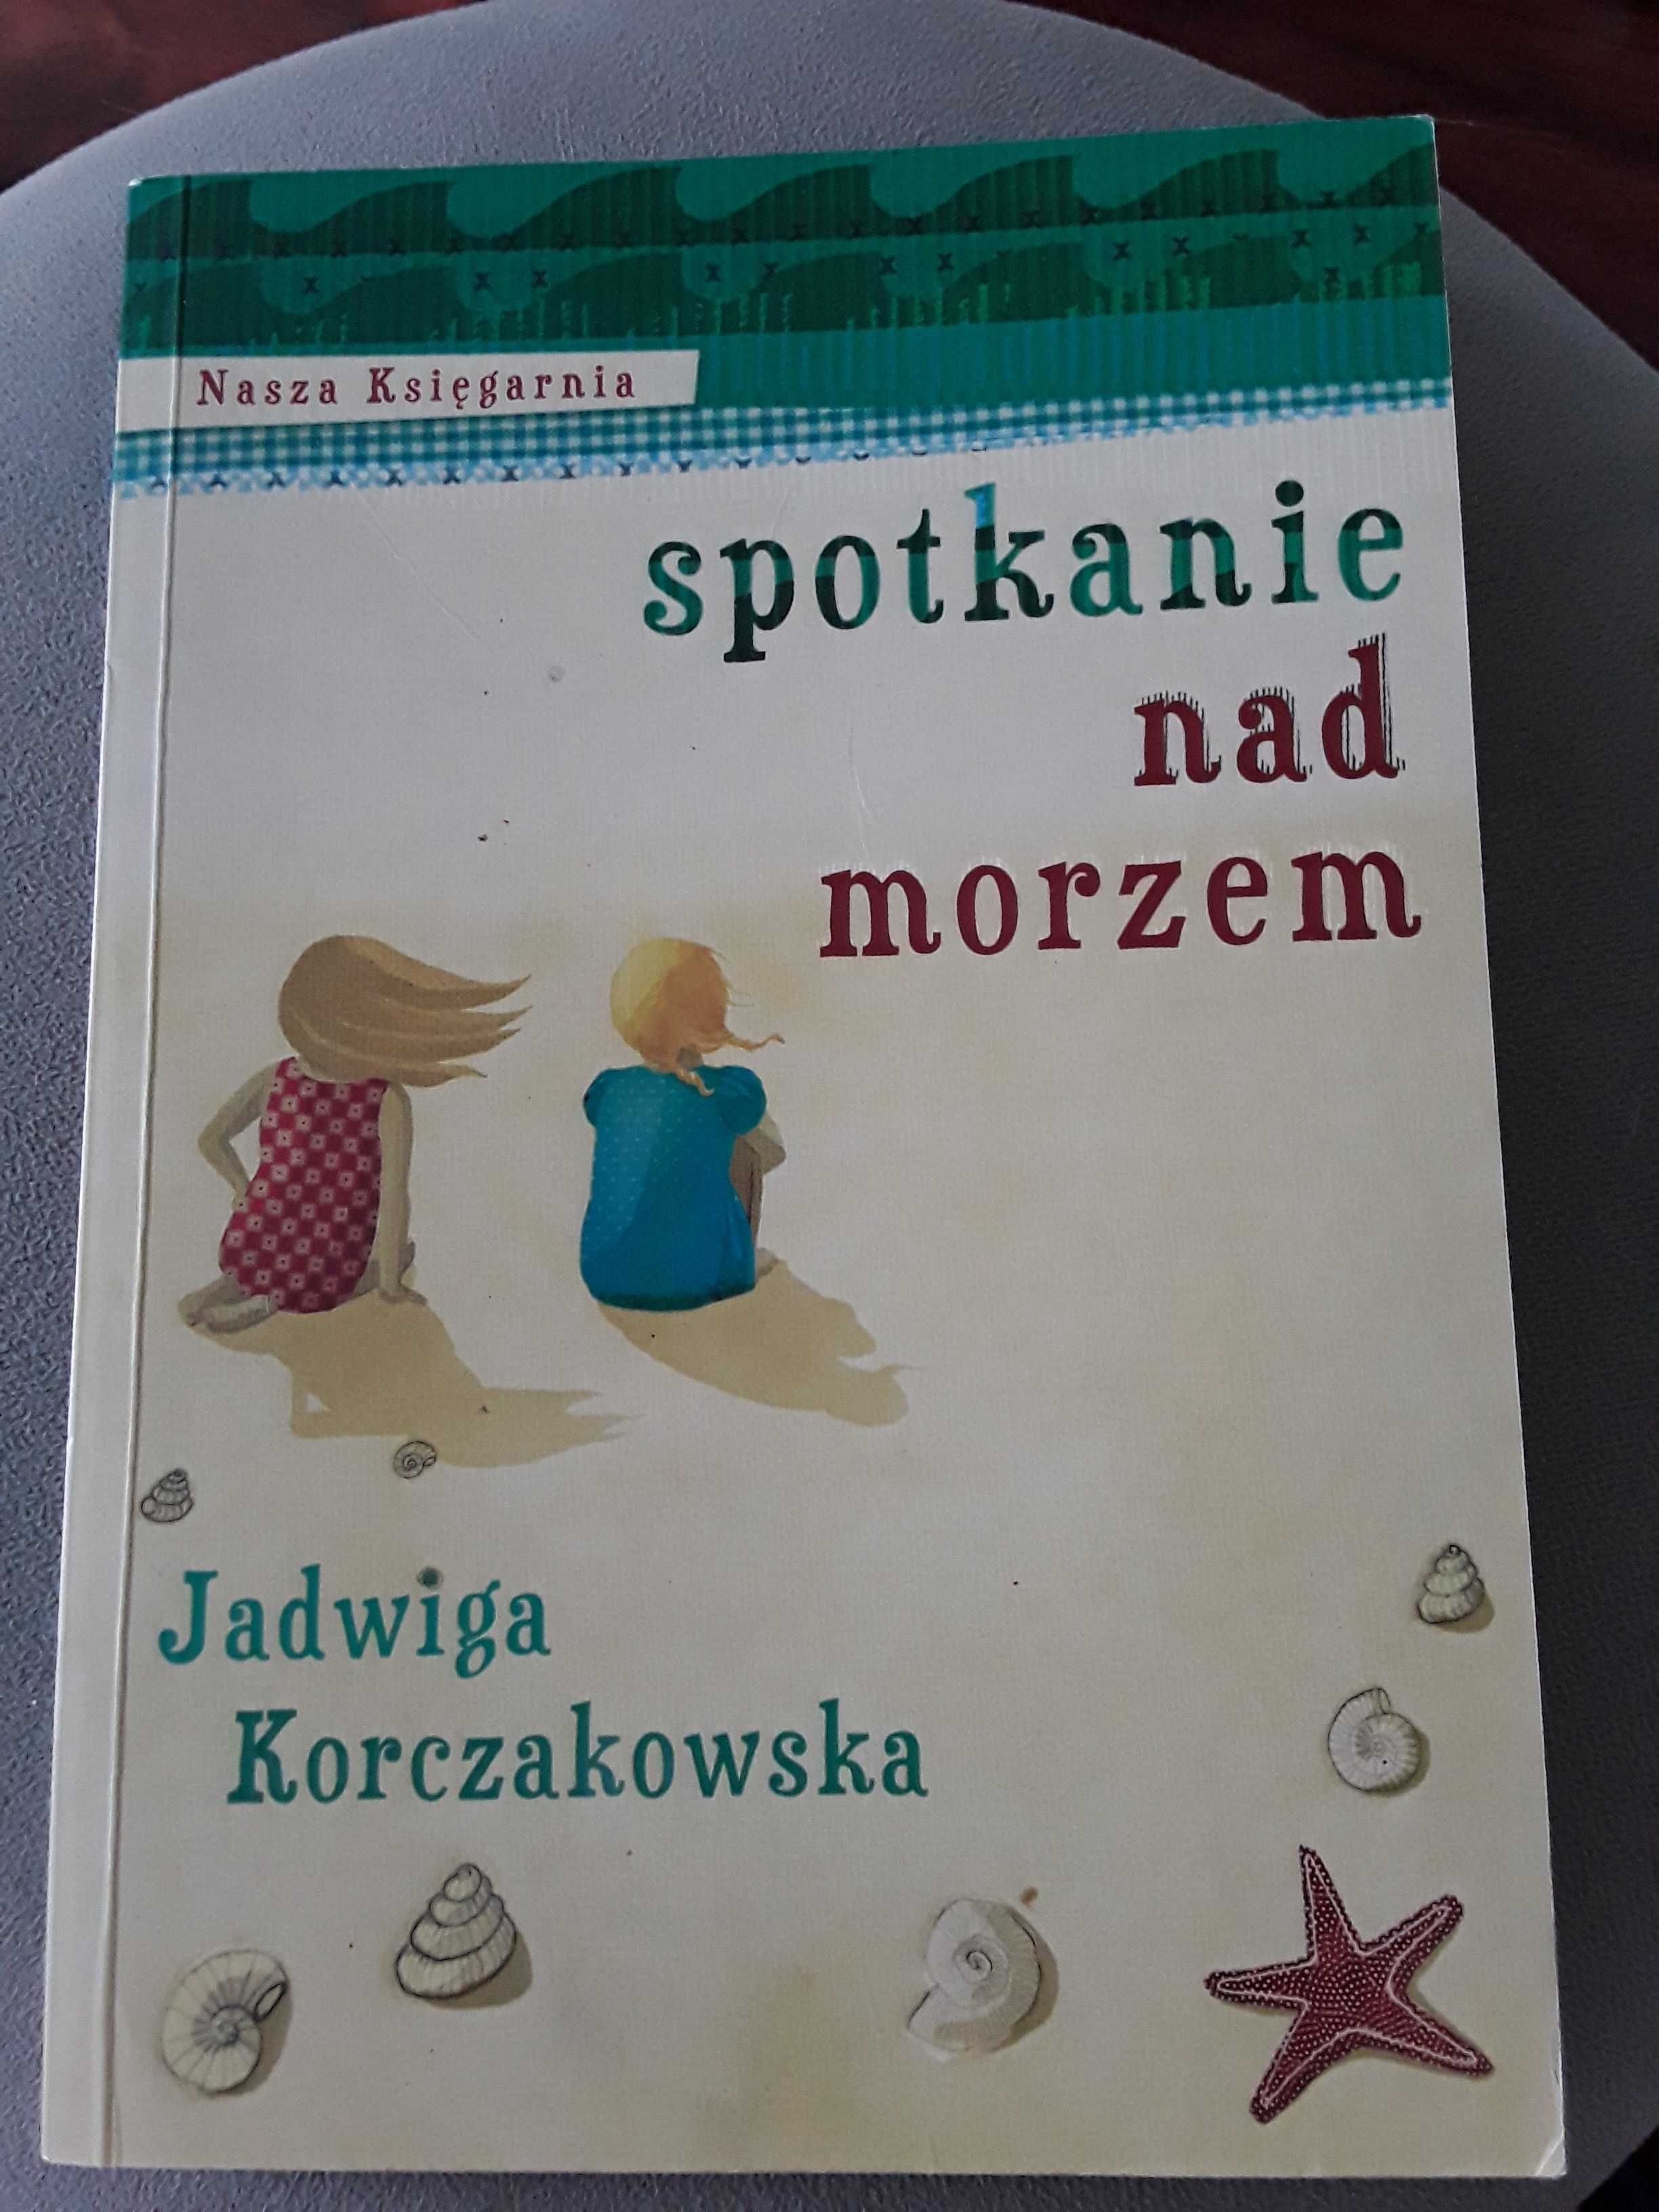 Lektura szkolna: Jadwiga Korczakowska "Spotkanie nad morzem"